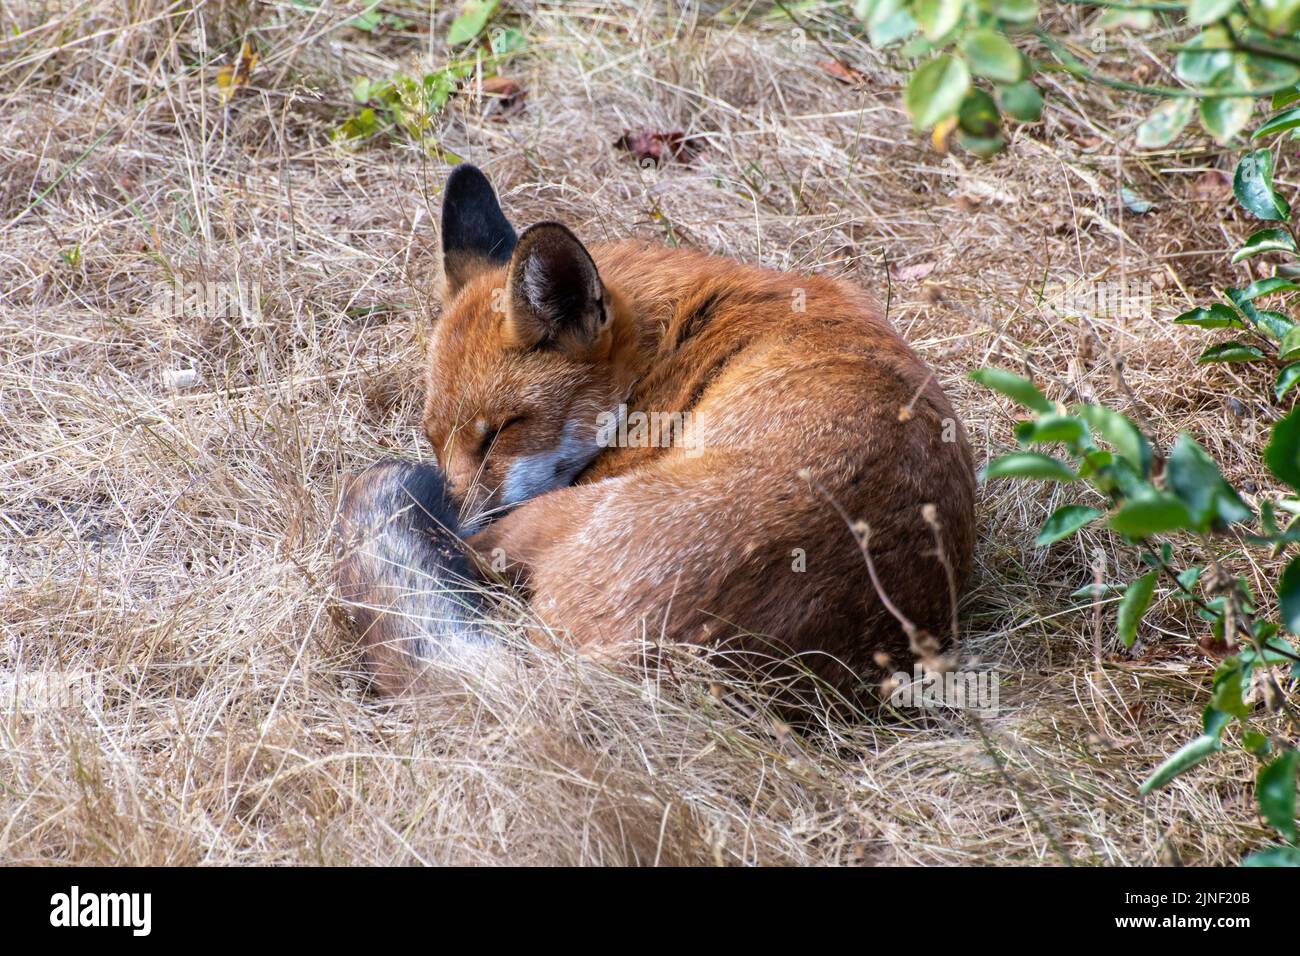 Un renard (Vulpes vulpes) qui dormait au milieu d'une longue herbe brune dans un jardin à l'arrière pendant la vague de chaleur estivale, août 2022, Hampshire, Angleterre, Royaume-Uni Banque D'Images